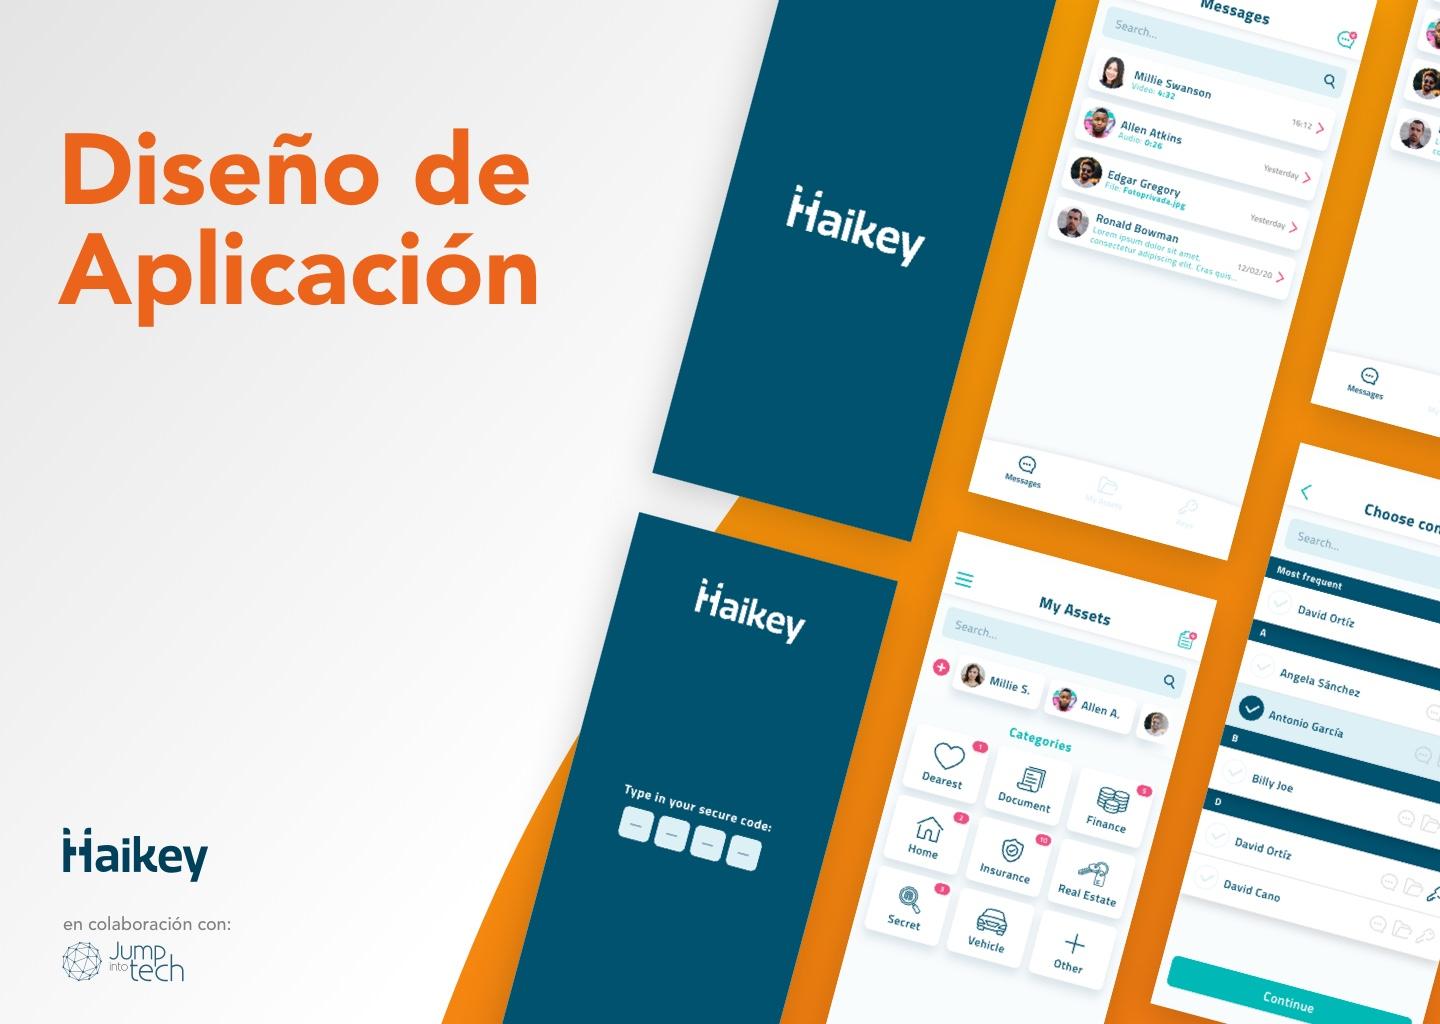 Noticia sobre Diseño de app - Haikey